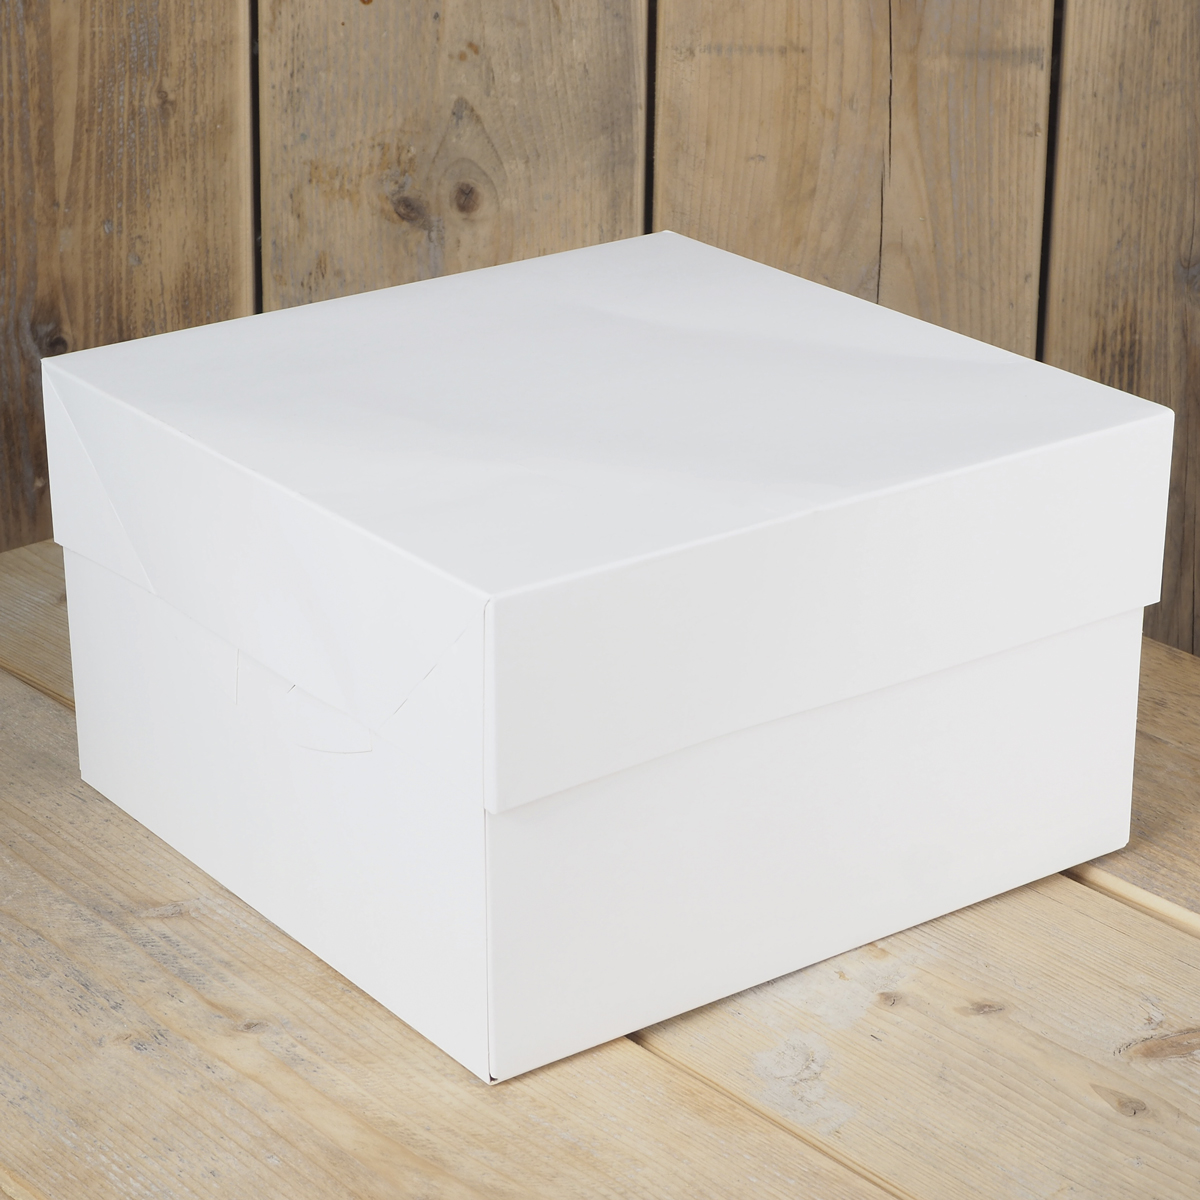 Imagen de producto: Caja para tarta 25 x 25 x 15 cm